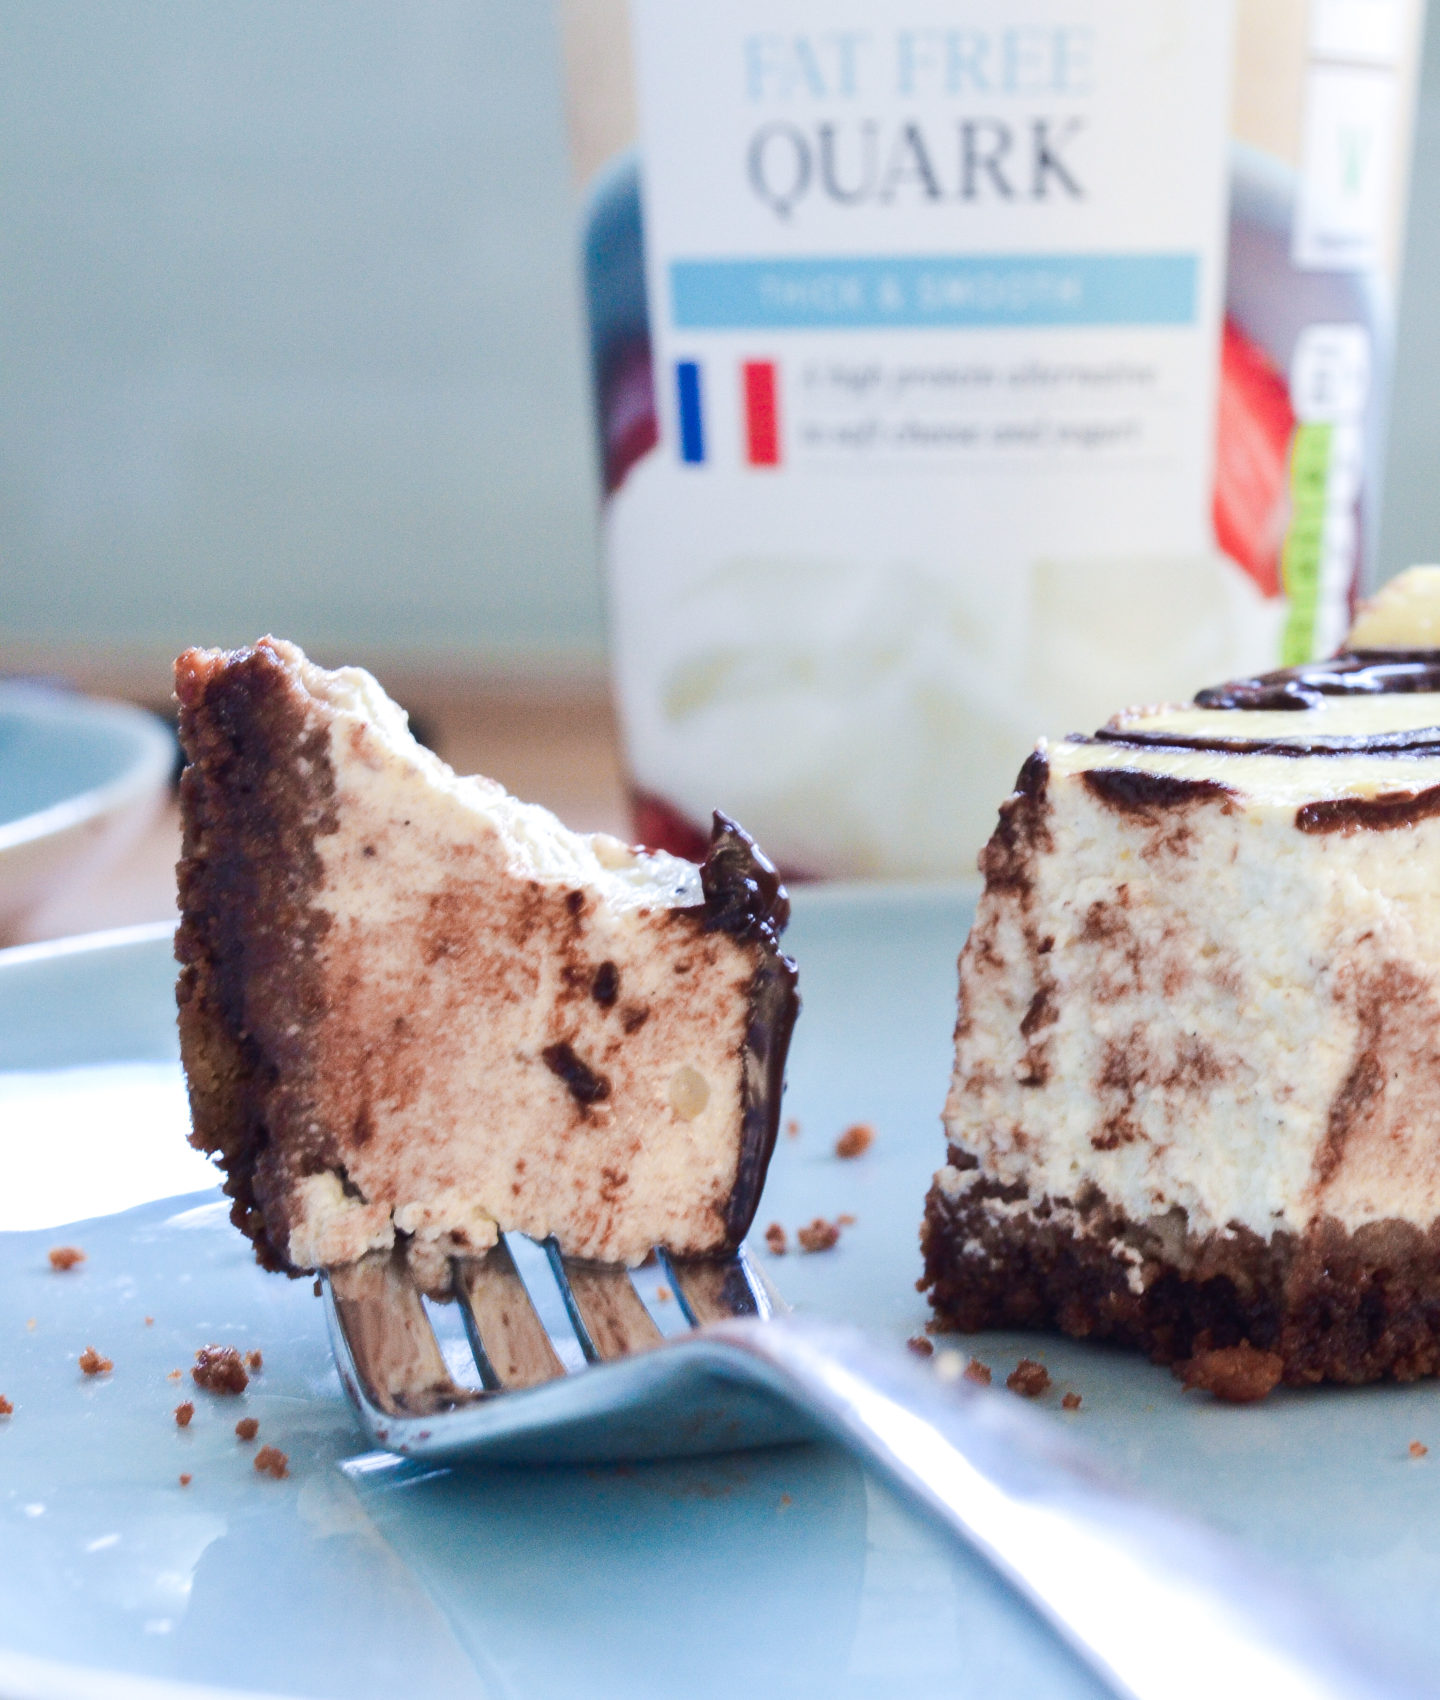 Quark baked chocolate cheesecake recipe